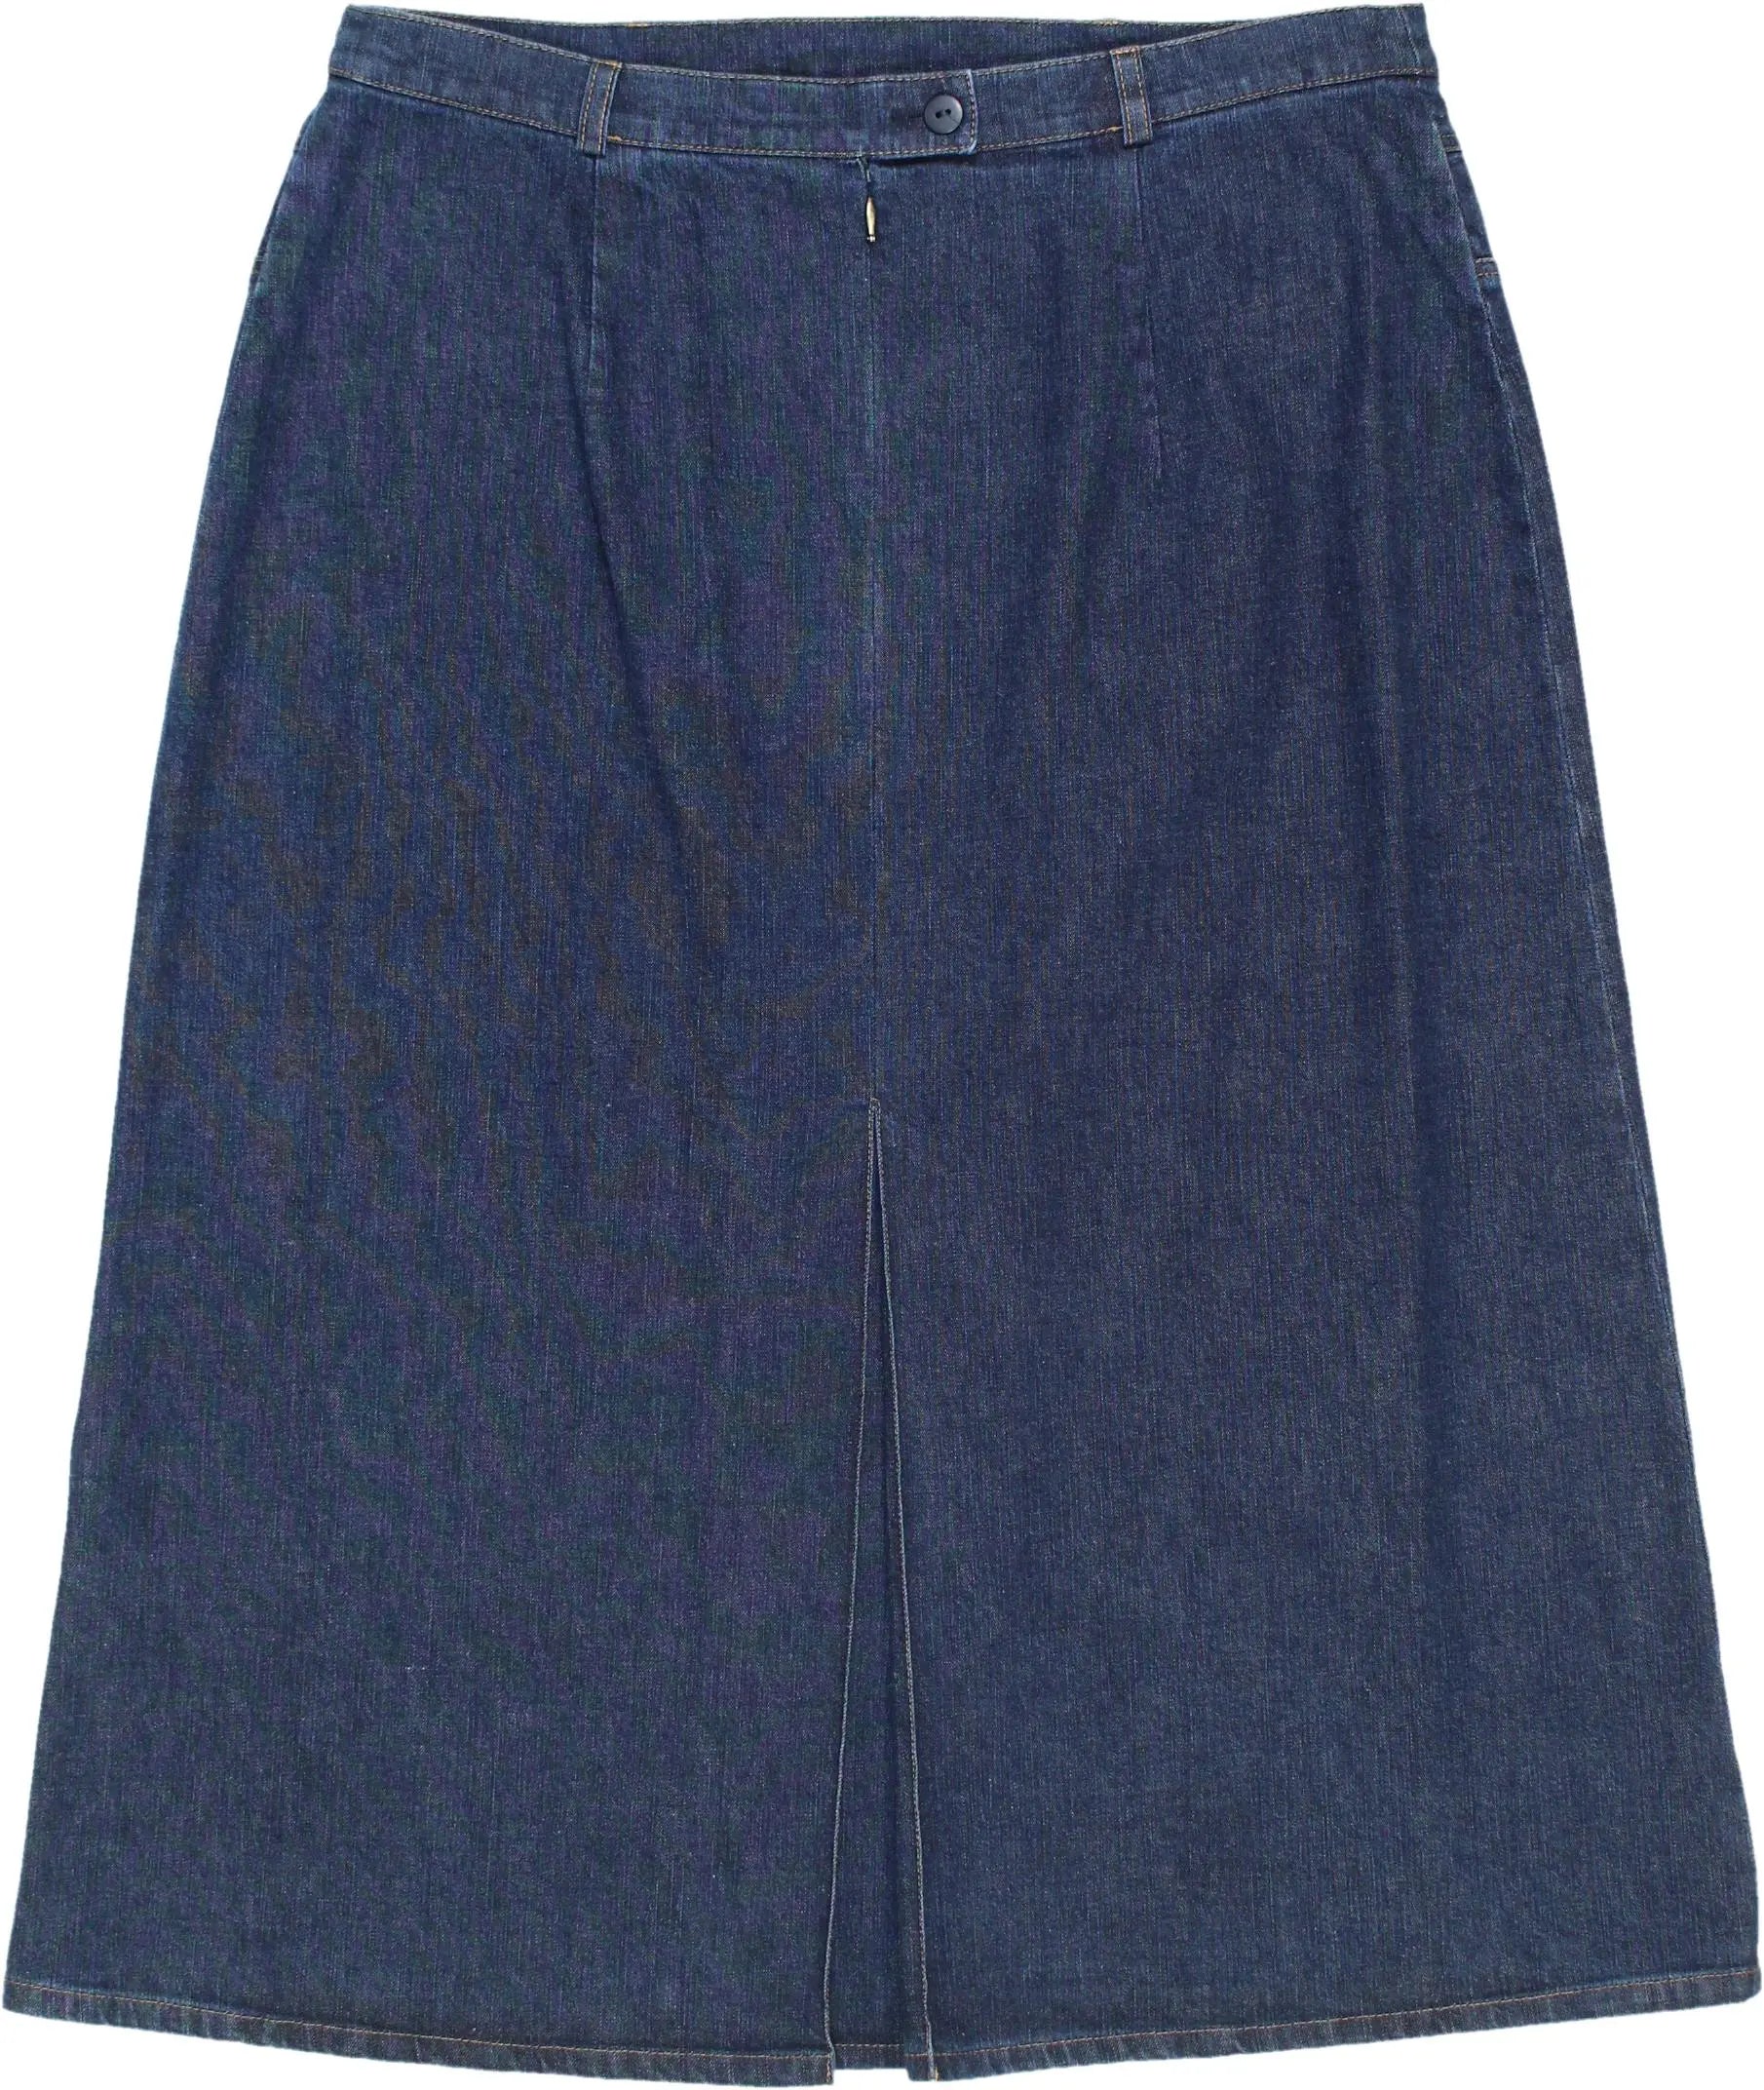 BASLER - 90s Denim Skirt- ThriftTale.com - Vintage and second handclothing